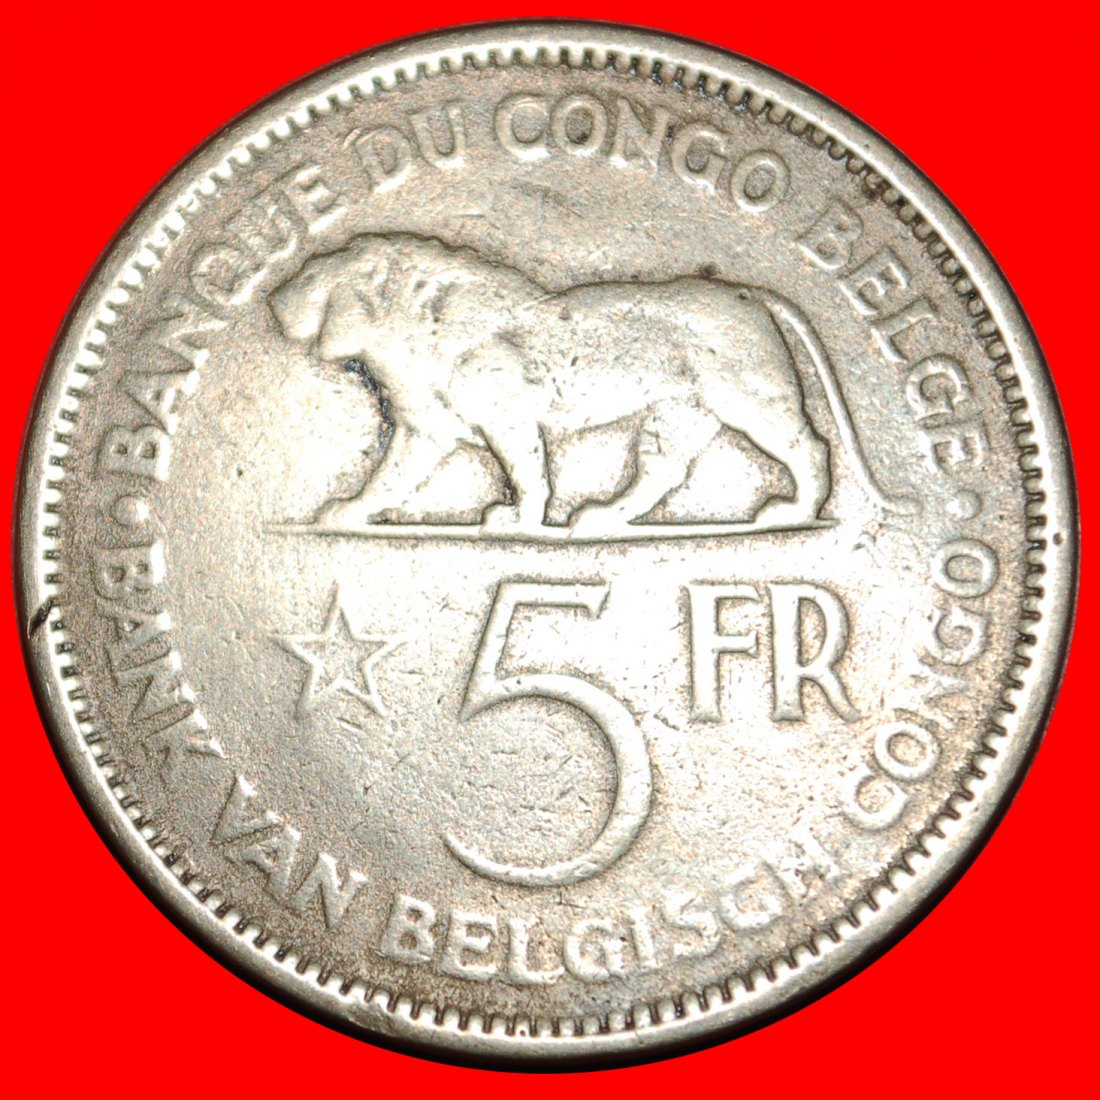  • PASSANT LION (1936-1937): BELGIAN CONGO ★ 5 FRANCS 1936 UNCOMMON! LOW START ★ NO RESERVE!   